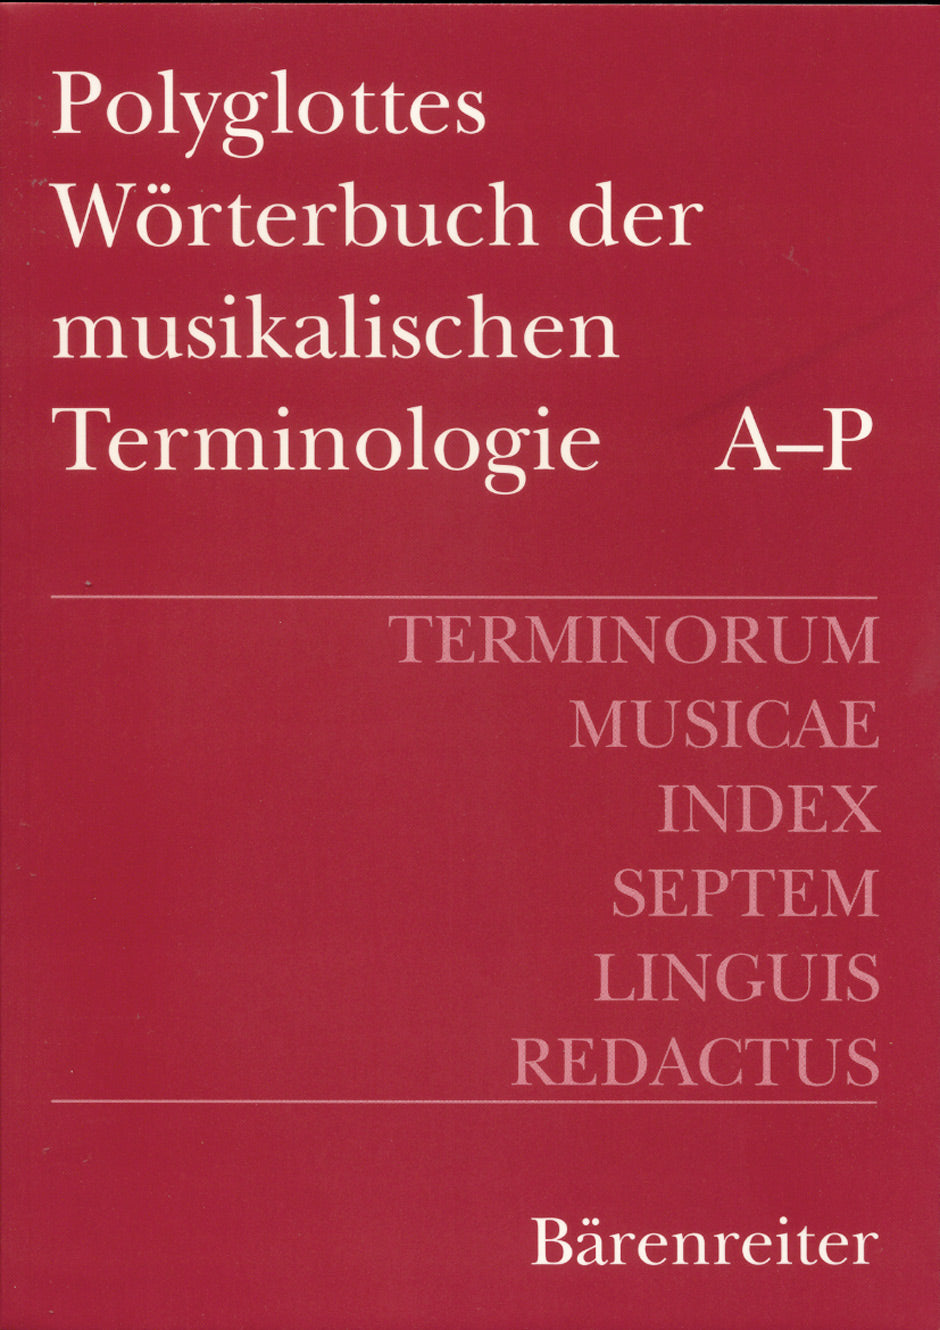 Polyglottes Wörterbuch der musikalischen Terminologie -Deutsch, Englisch, Französisch, Italienisch, Spanisch, Ungarisch, Russisch (2 Bände)-